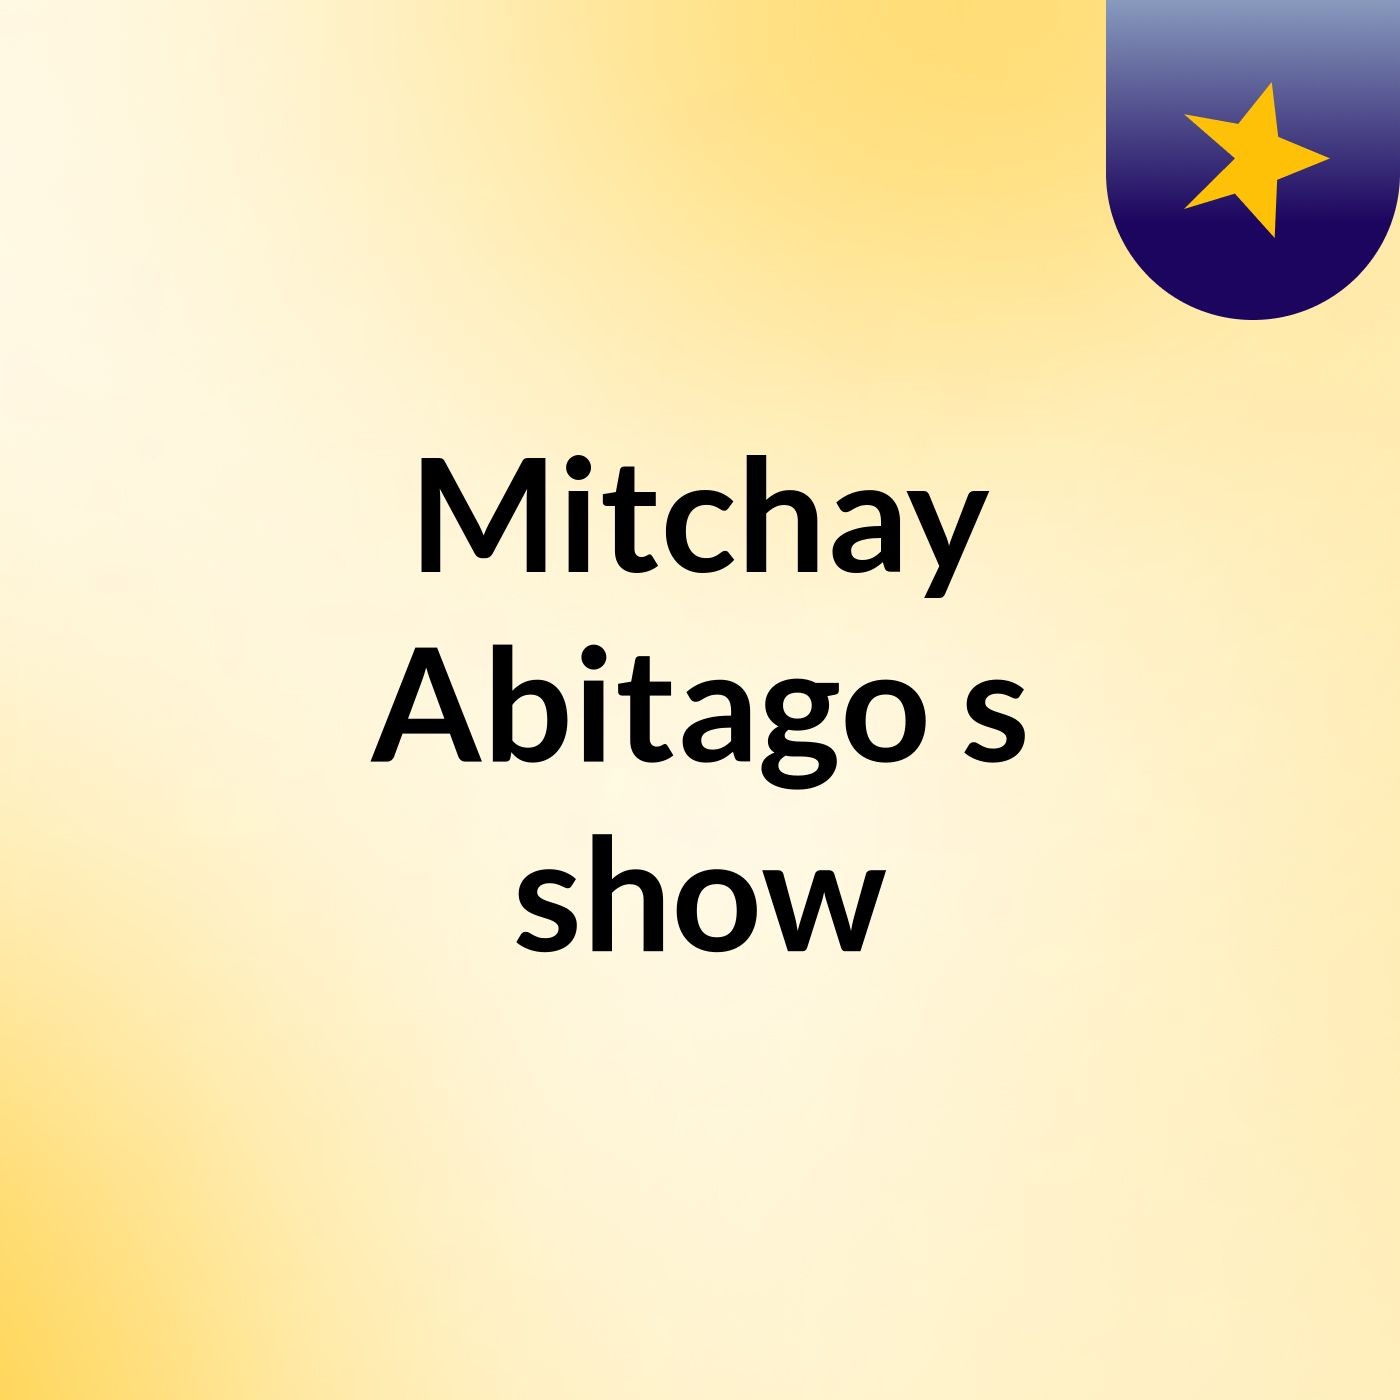 Mitchay Abitago's show